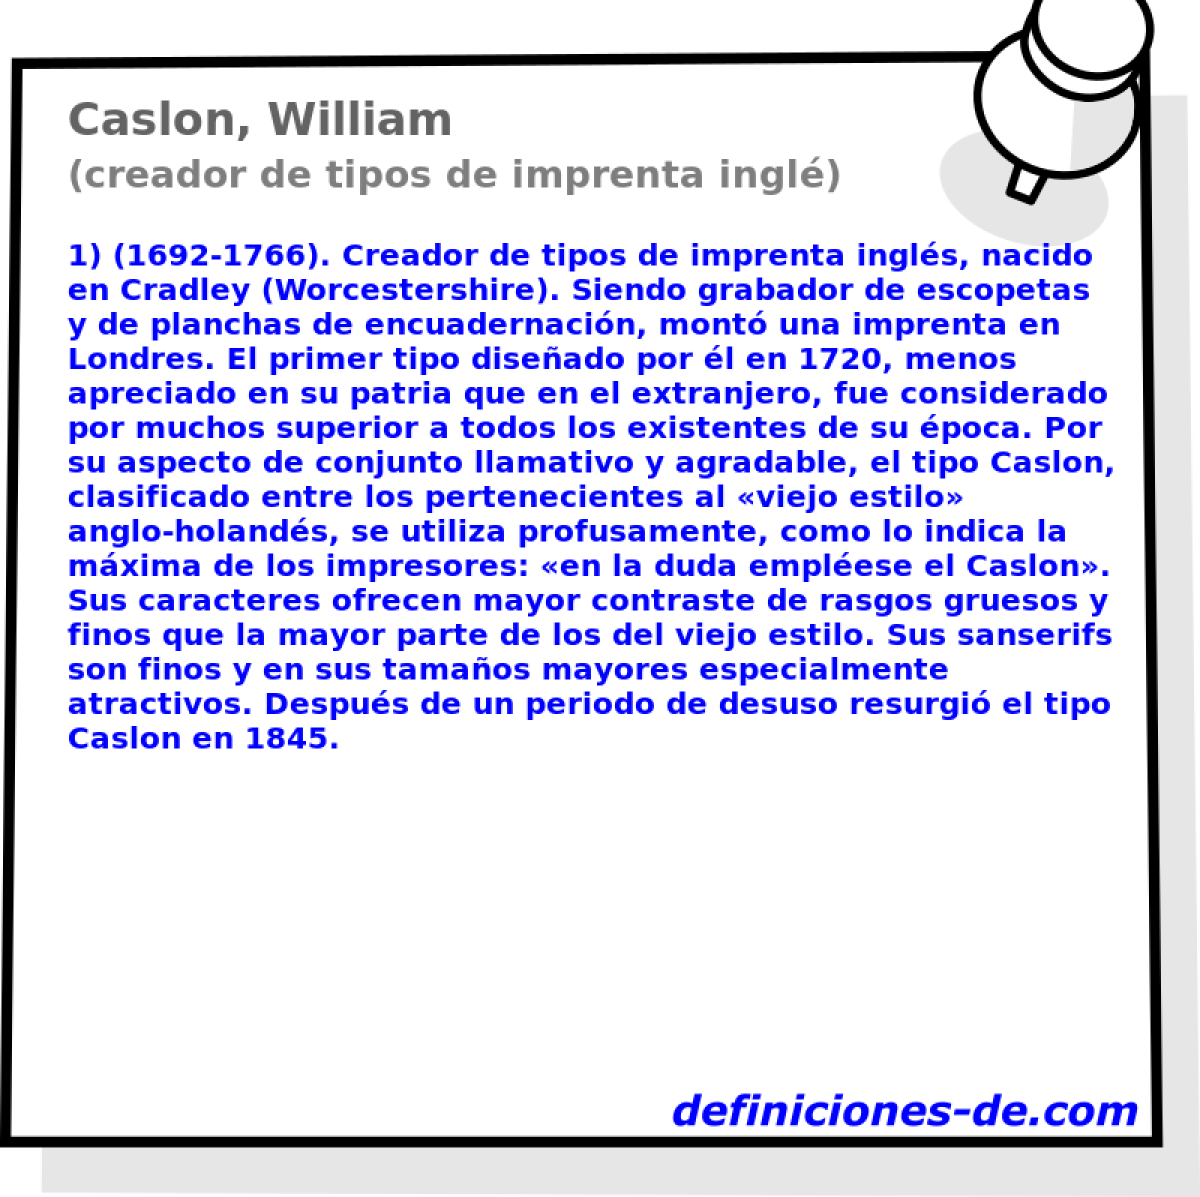 Caslon, William (creador de tipos de imprenta ingl)